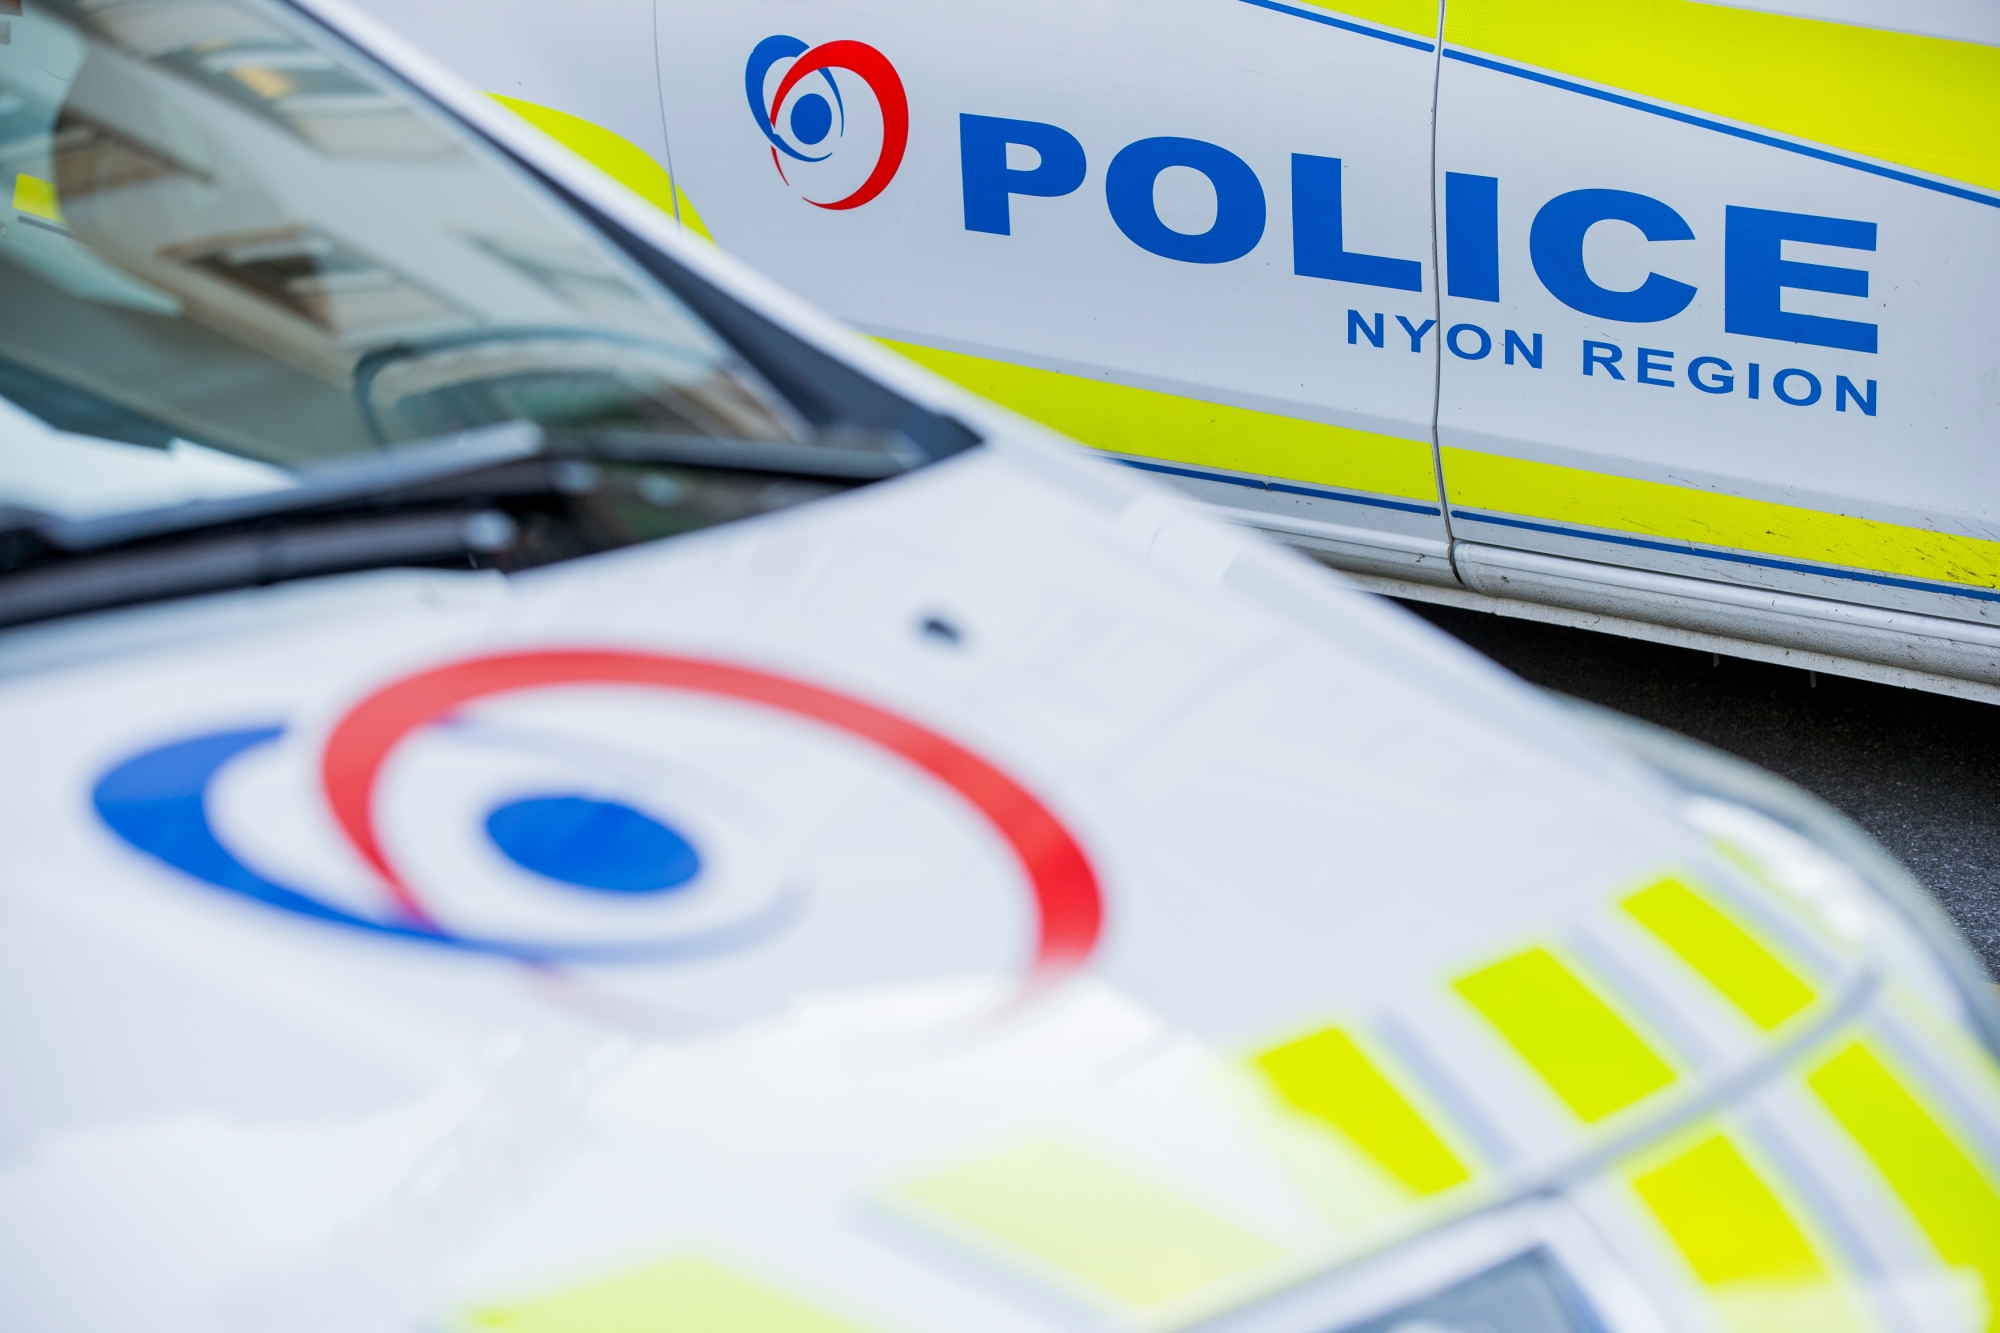 La Police Nyon Region va effectuer des contrôles à la gare de Nyon.